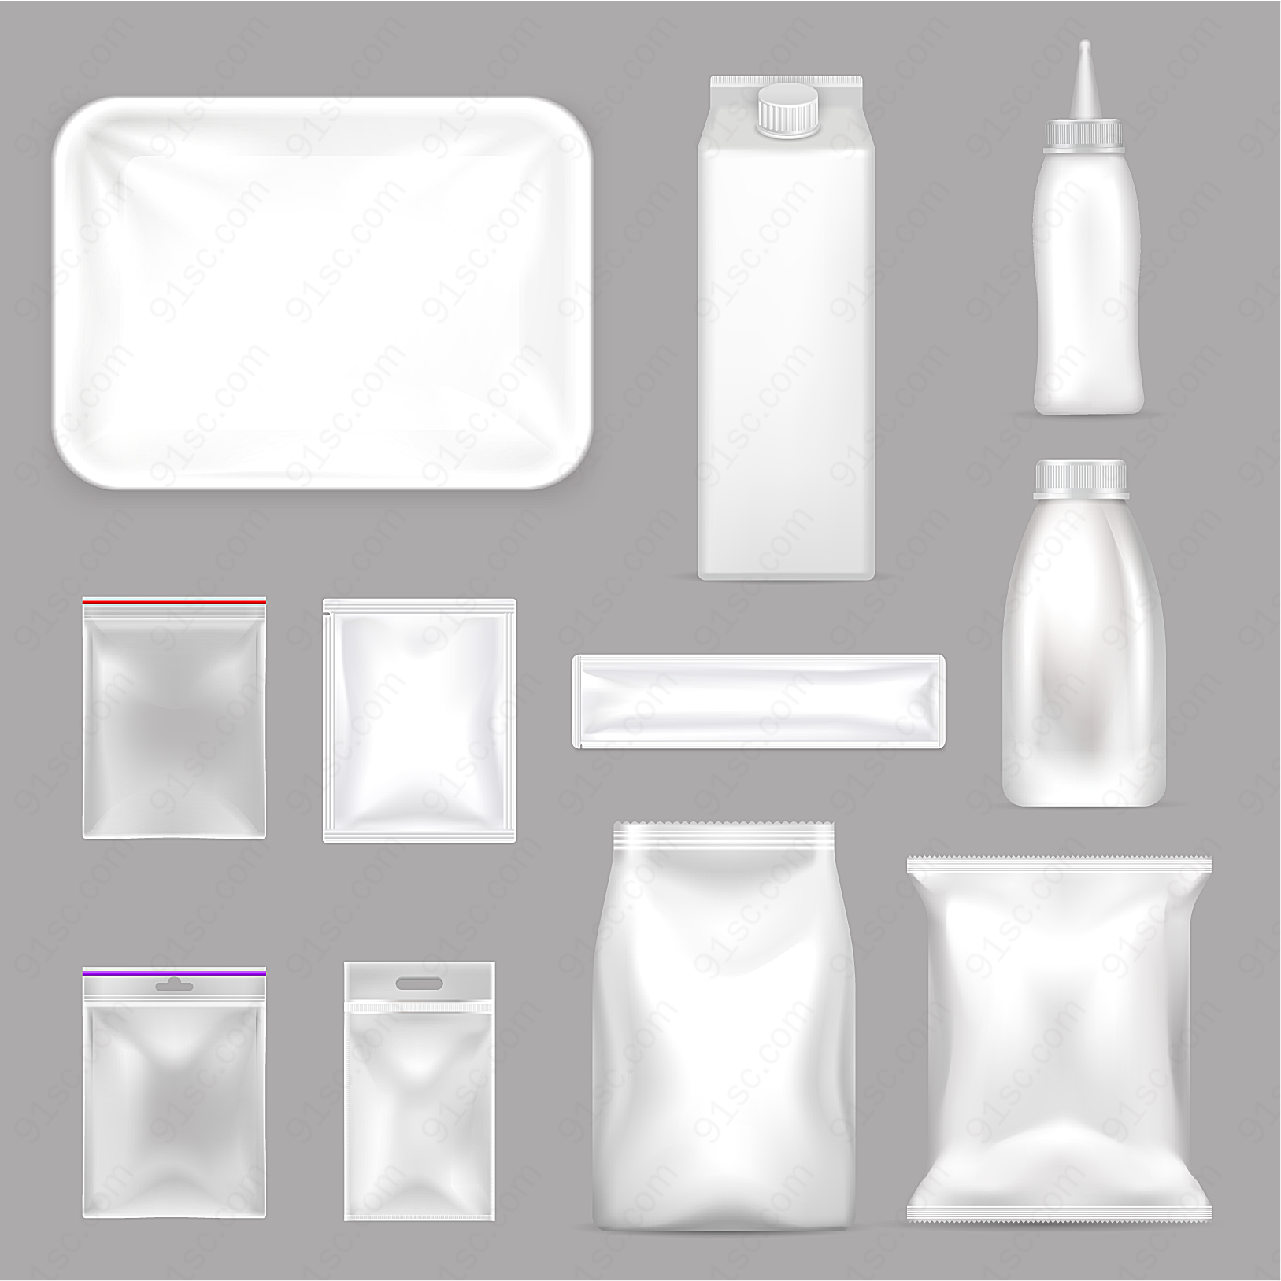 牛奶瓶与保鲜袋矢量包装设计